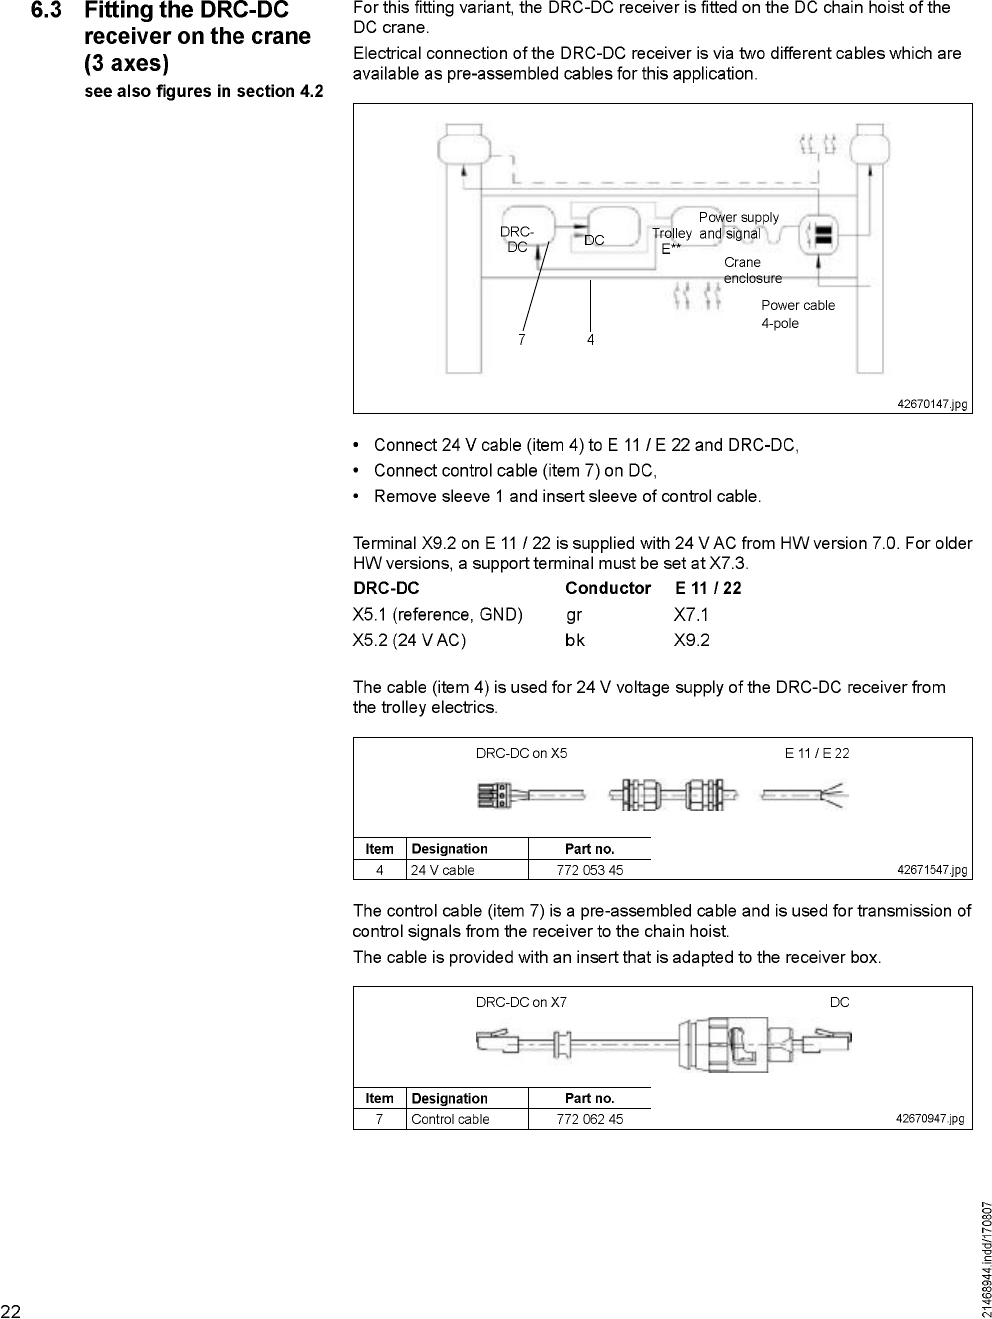 Scanreco Dc6tr03fh917 Remote Control User Manual